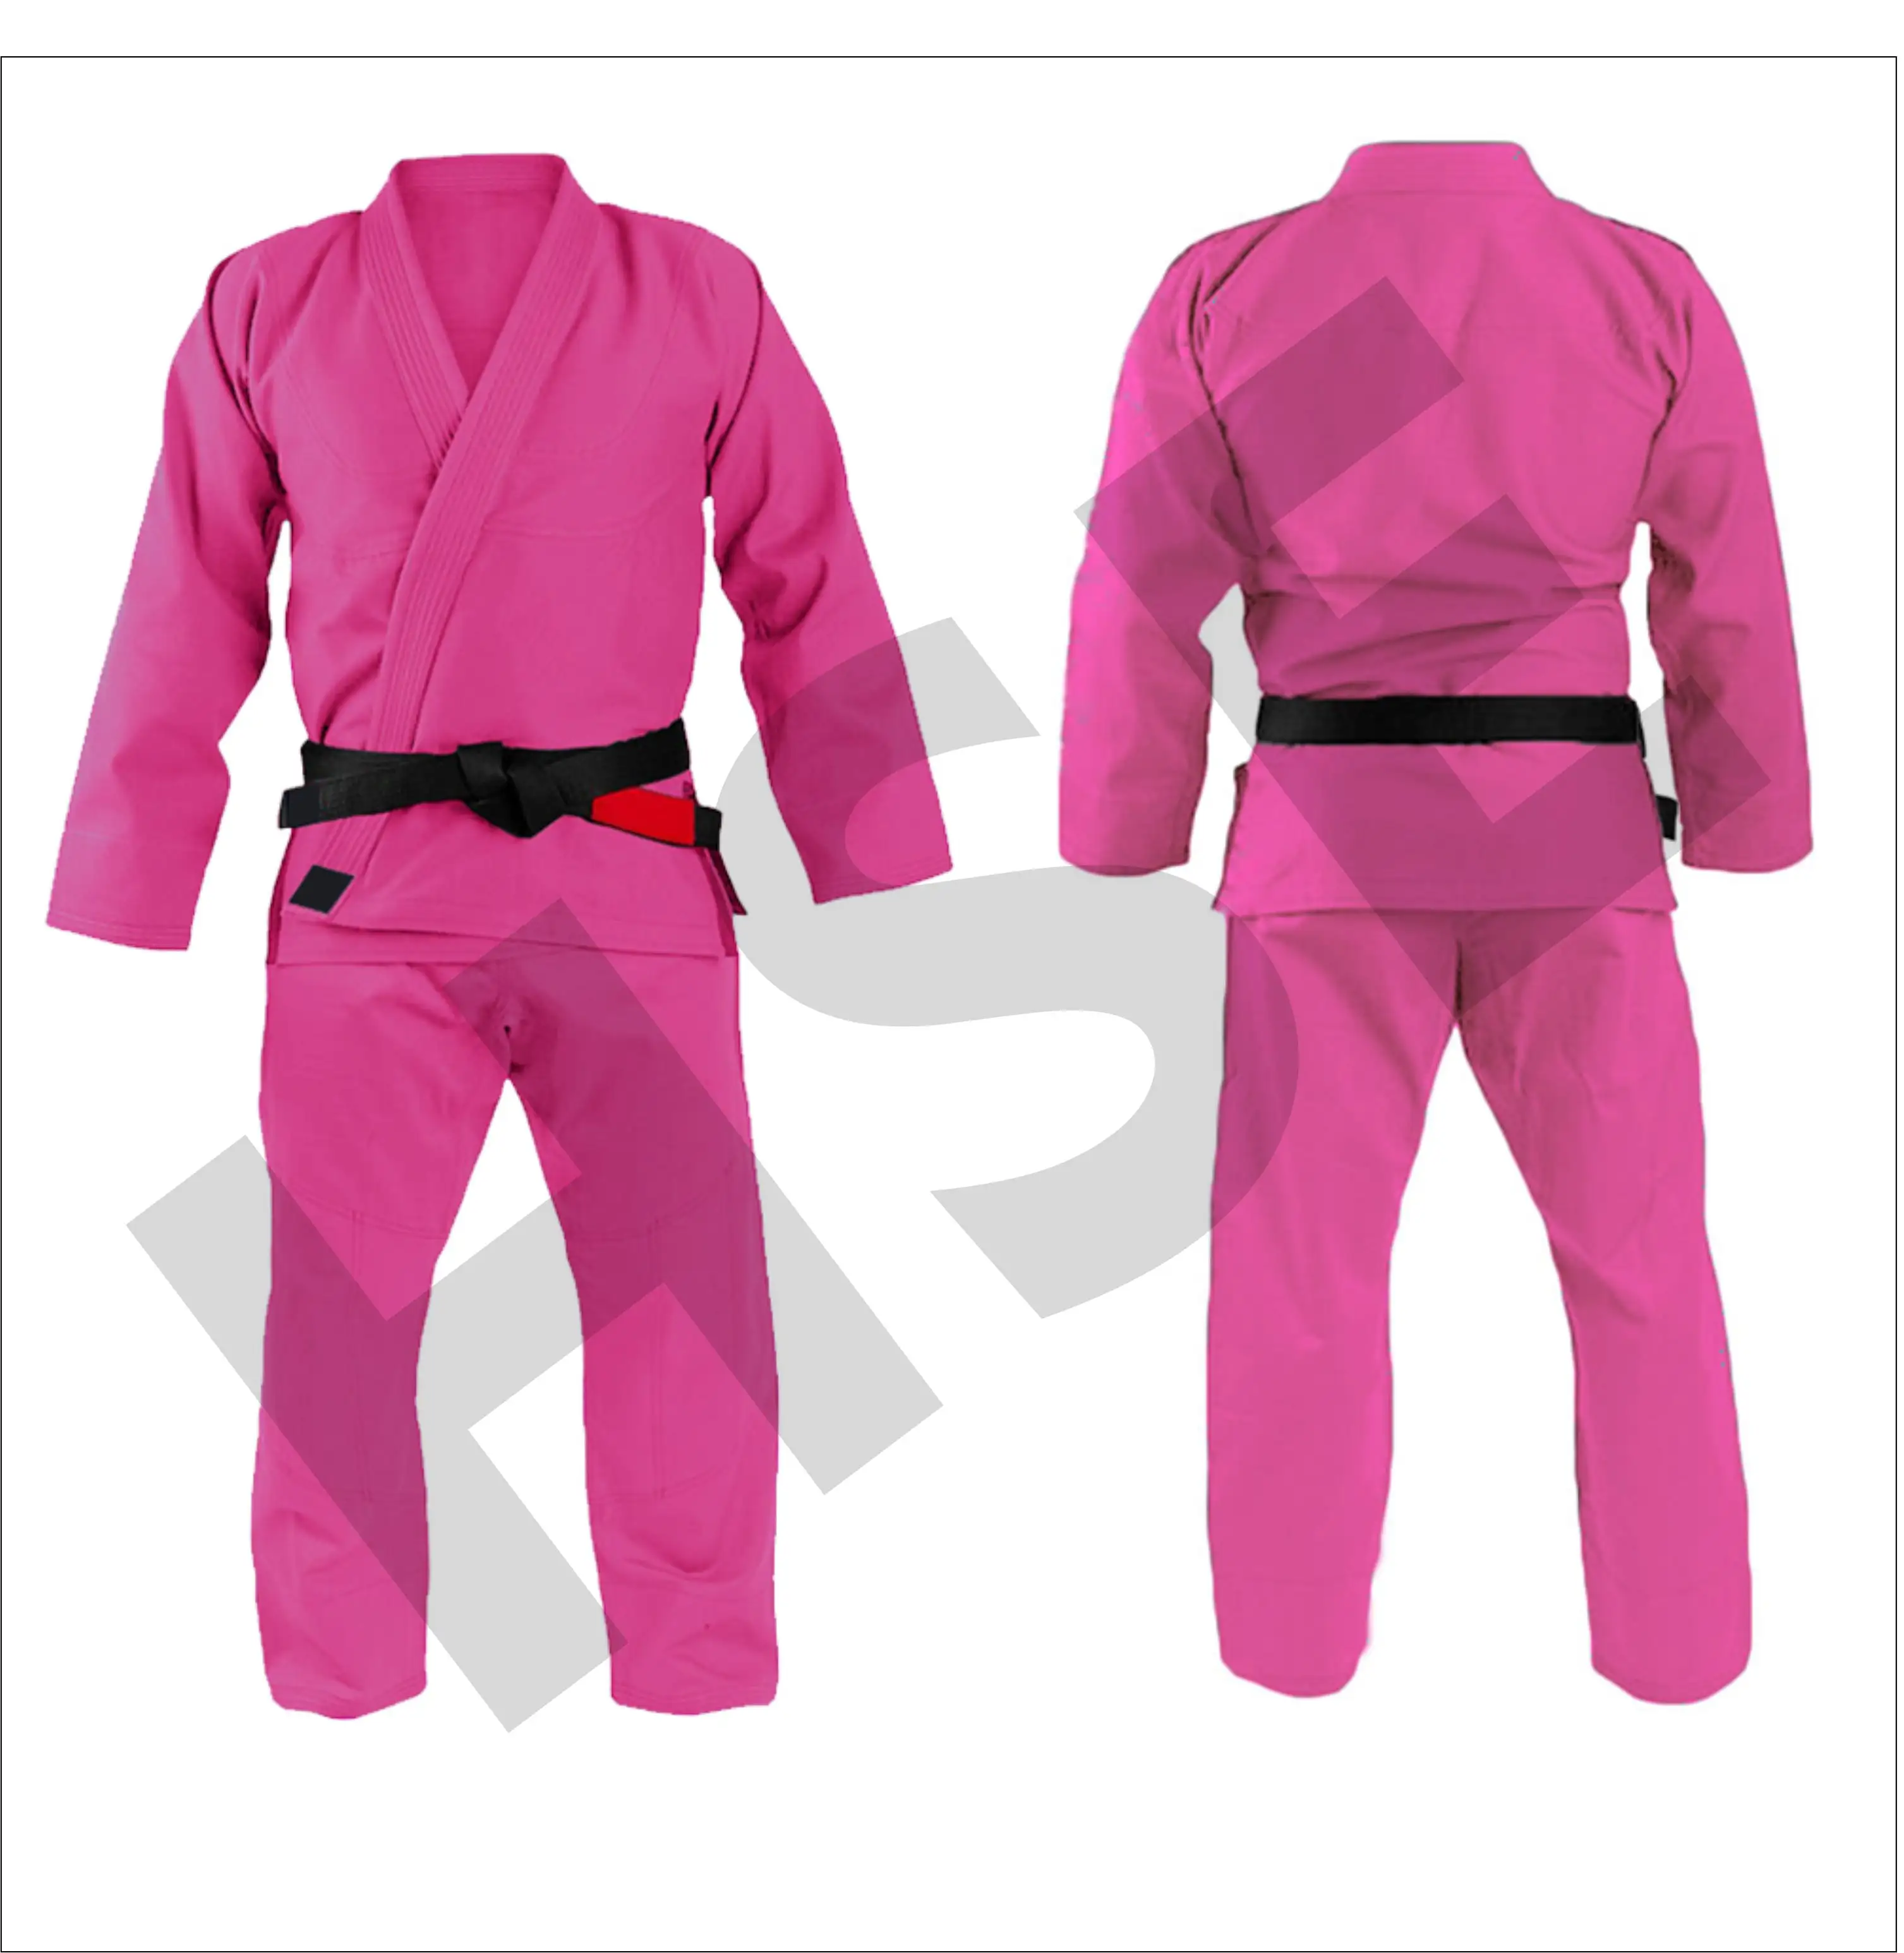 Custom Jiu jitsu kimonos, jiu jitsu gi, jiu jitsu uniform